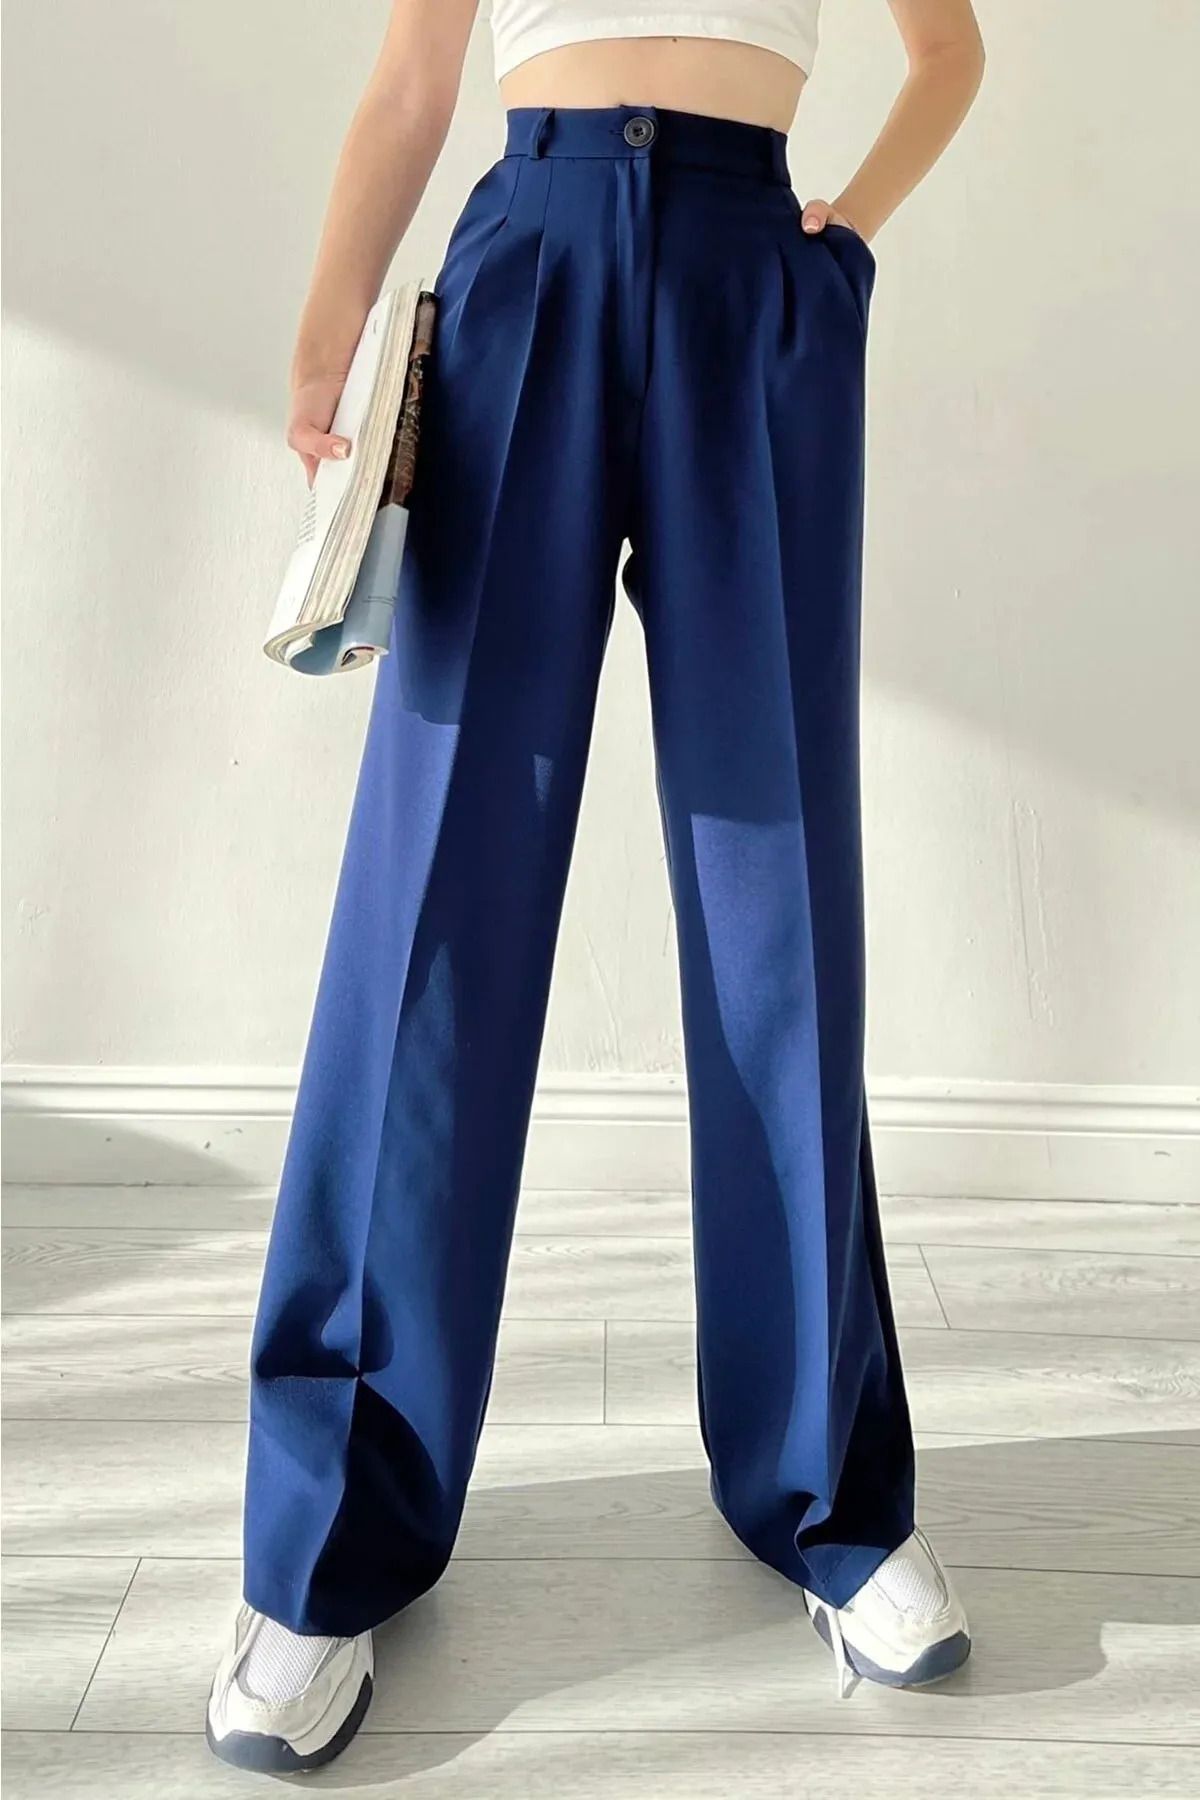 CurcunaShop Elçim Kadın Yüksel Bel Likralı Bol Paça Kumaş Pantolon,Özel Tasarım Palazzo Model